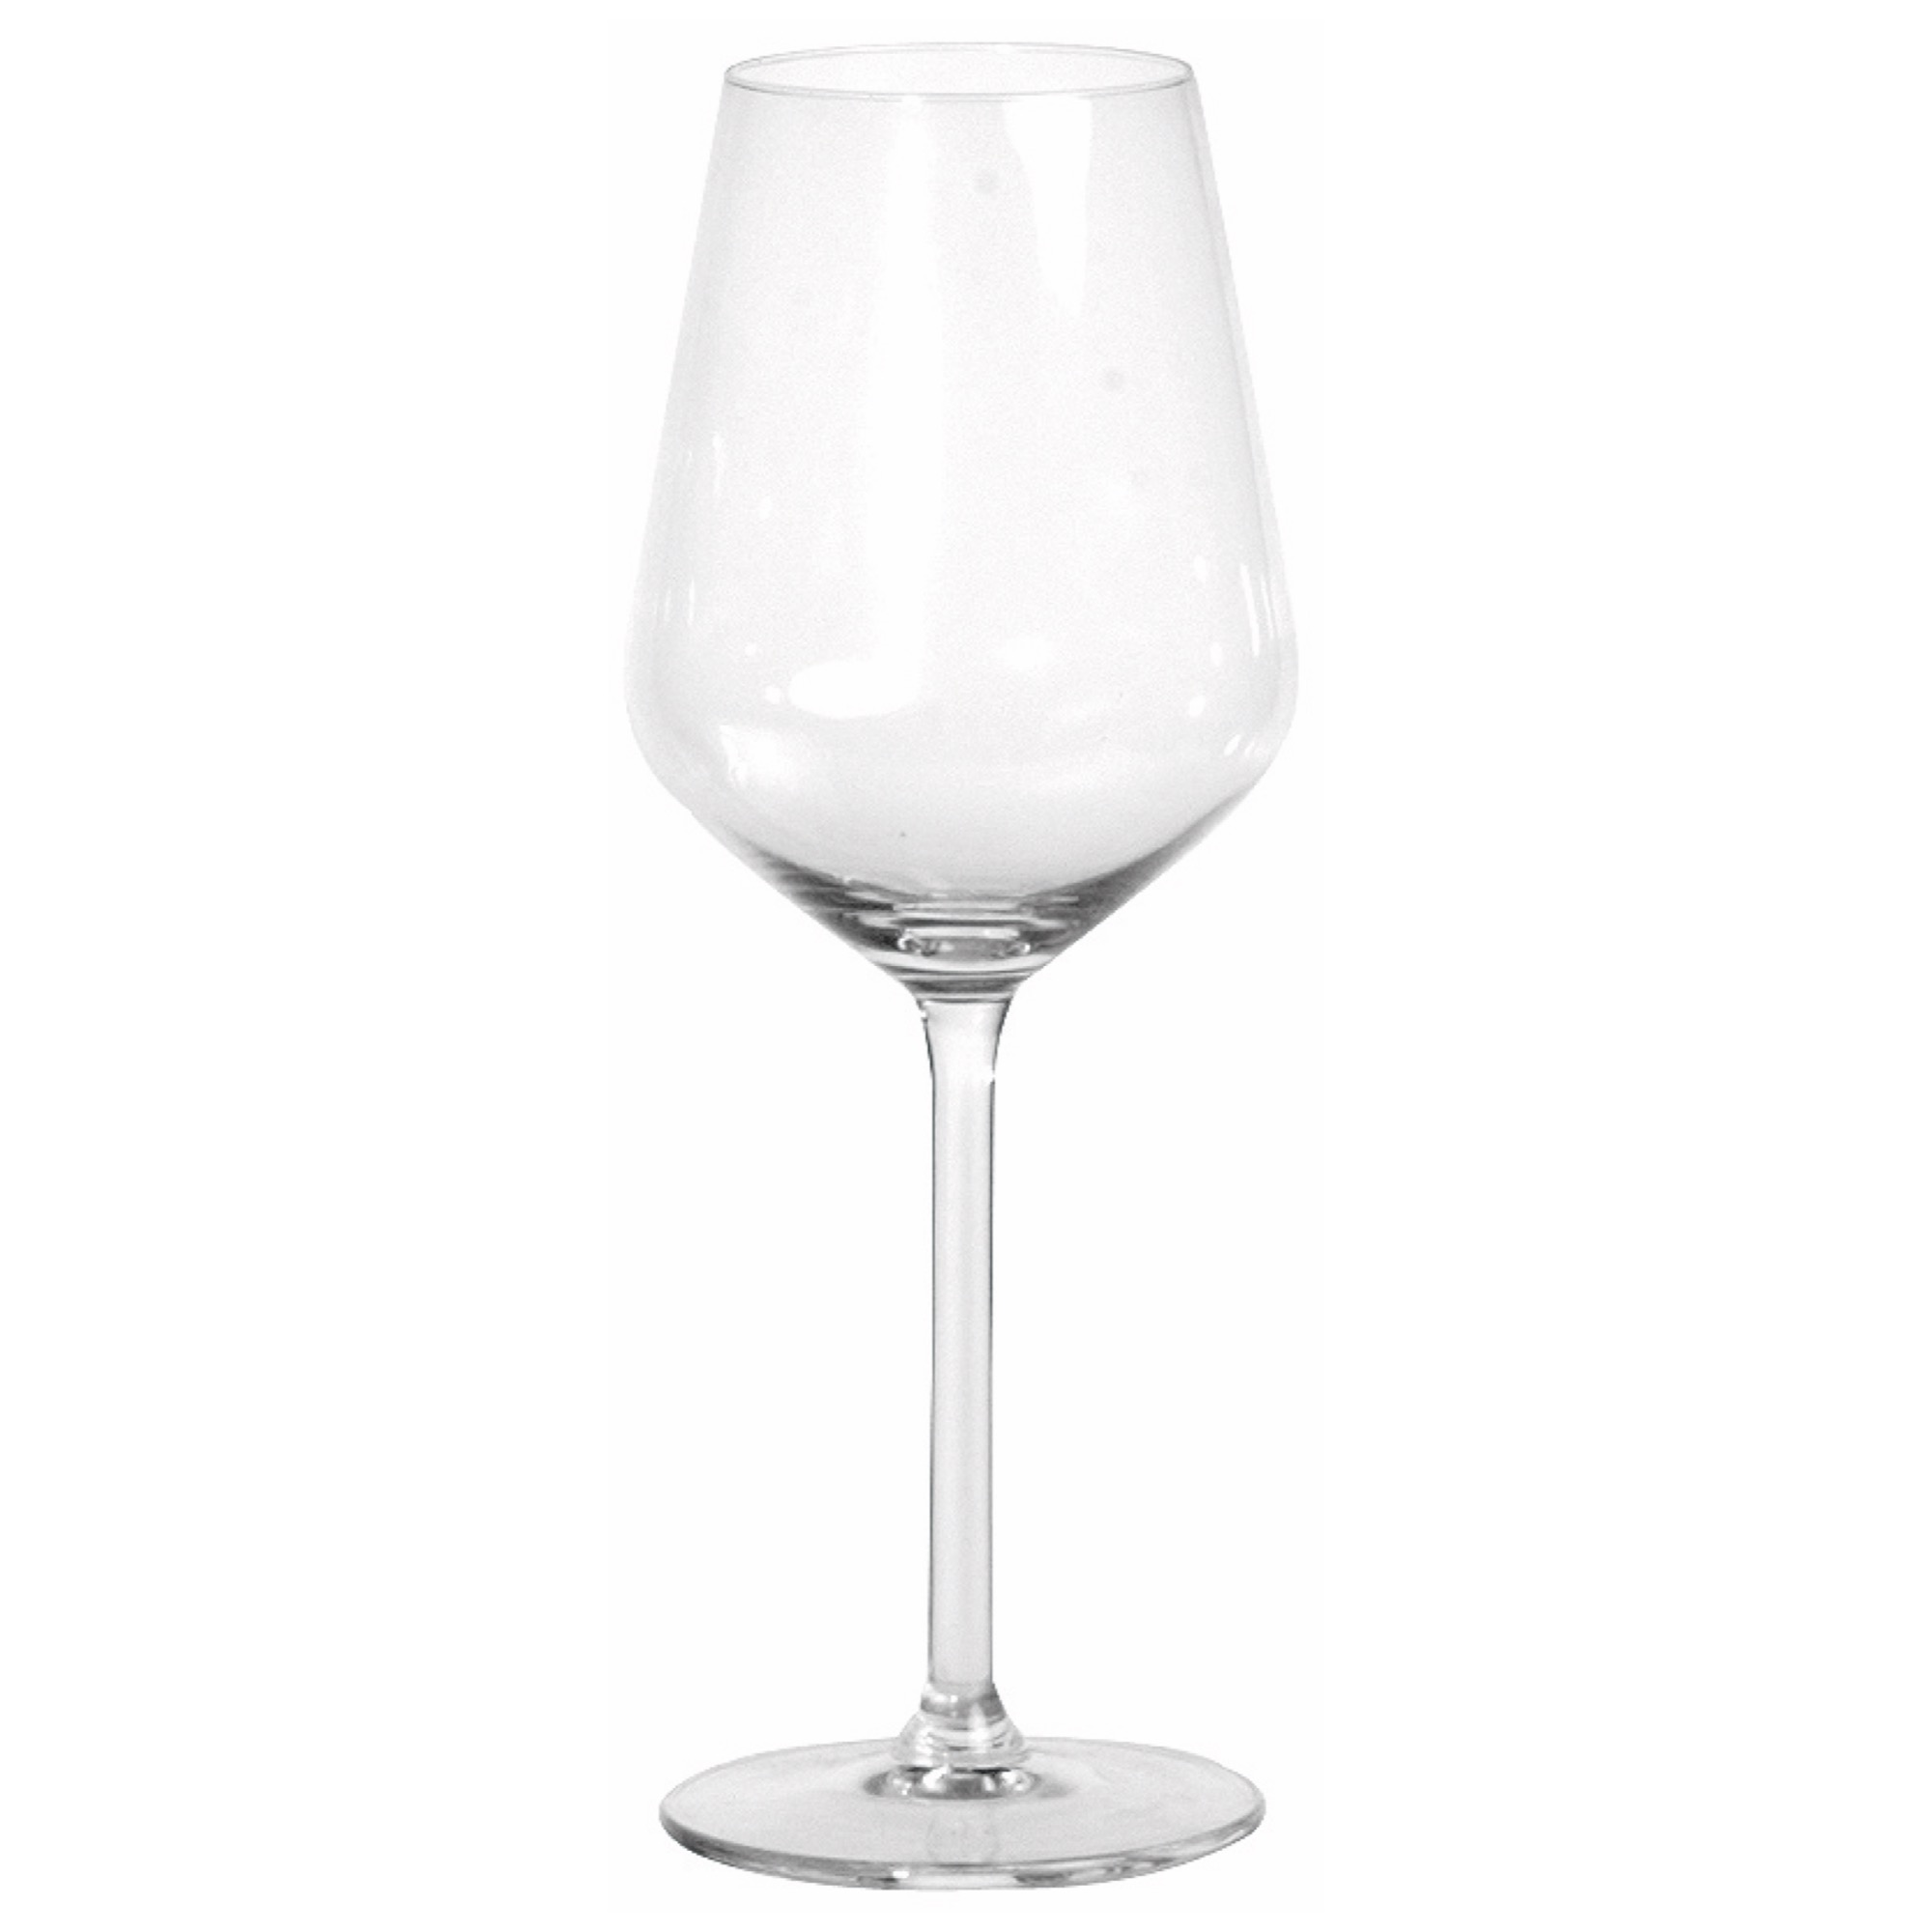 Royal Carre pohár/víno 380ml 1/8 znač.